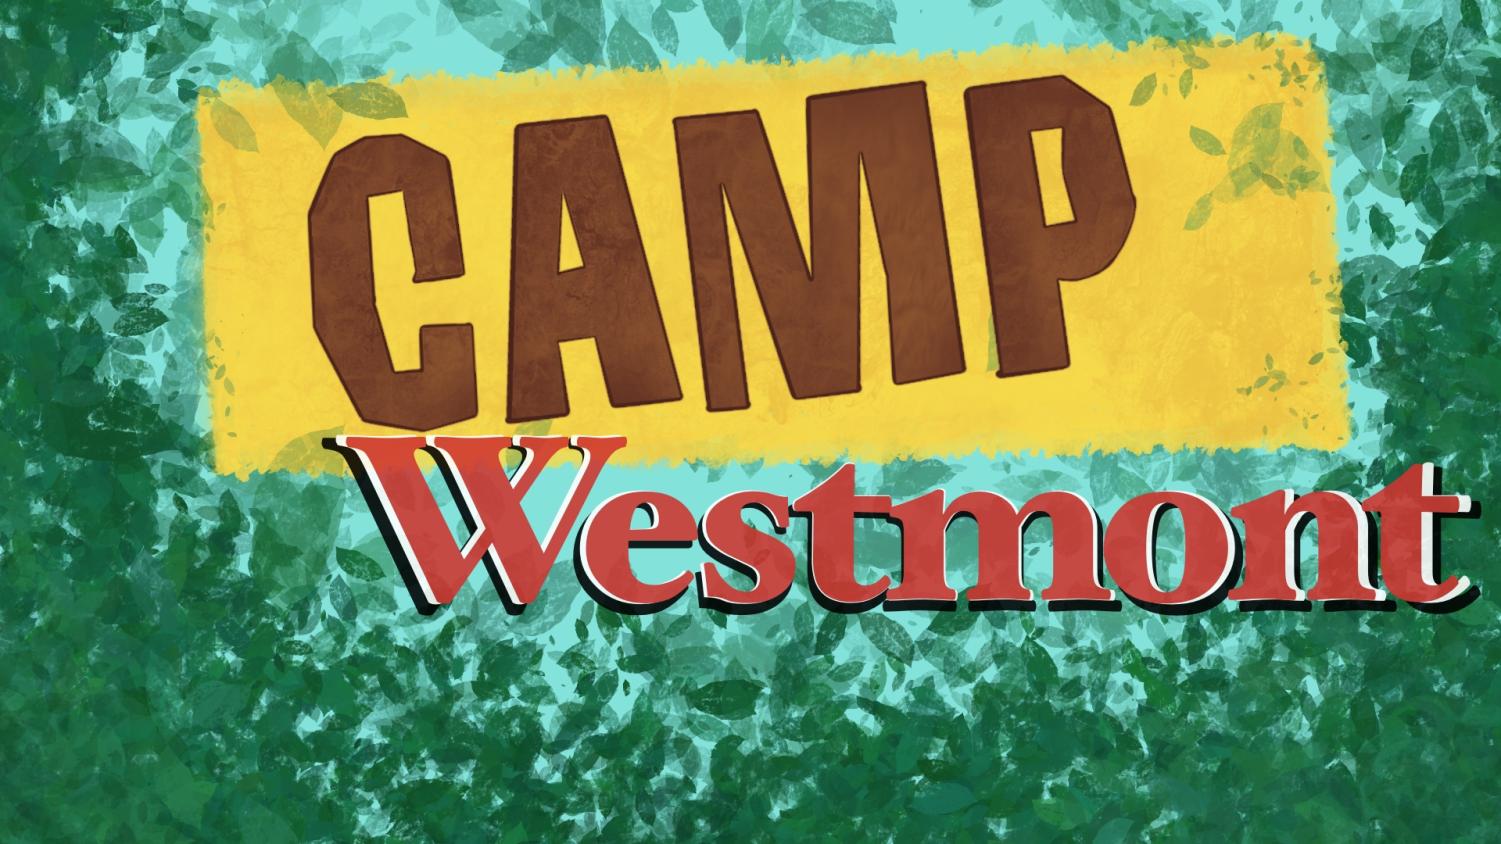 Camp Westmont? The Horizon